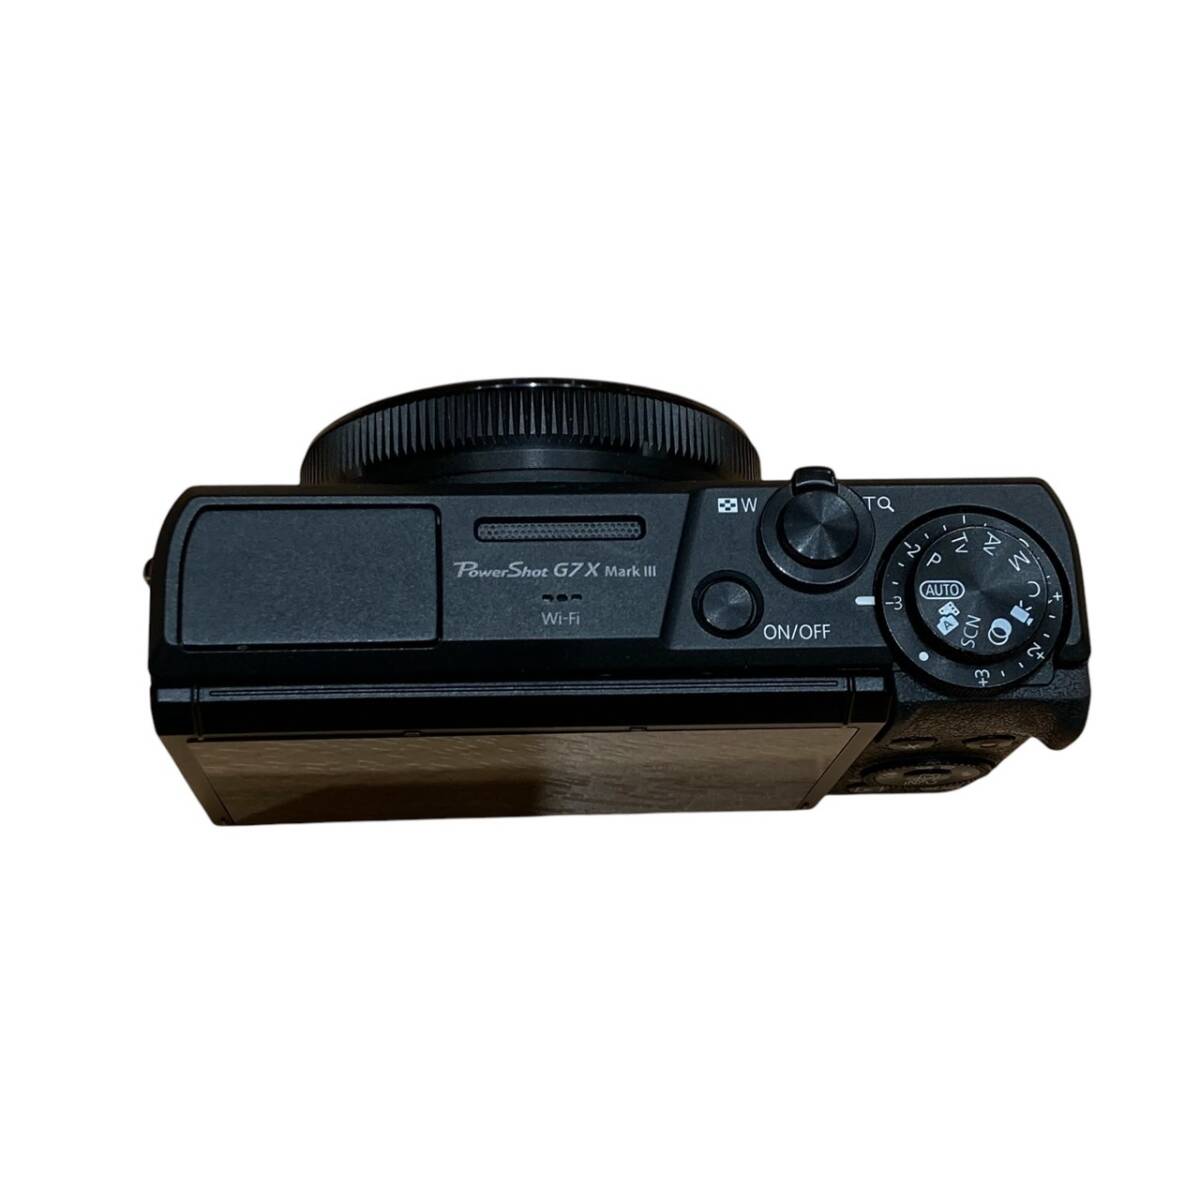 Canon キャノン PowerShot G7X Mark 3 MarkIII デジタルカメラ ブラック系の画像5